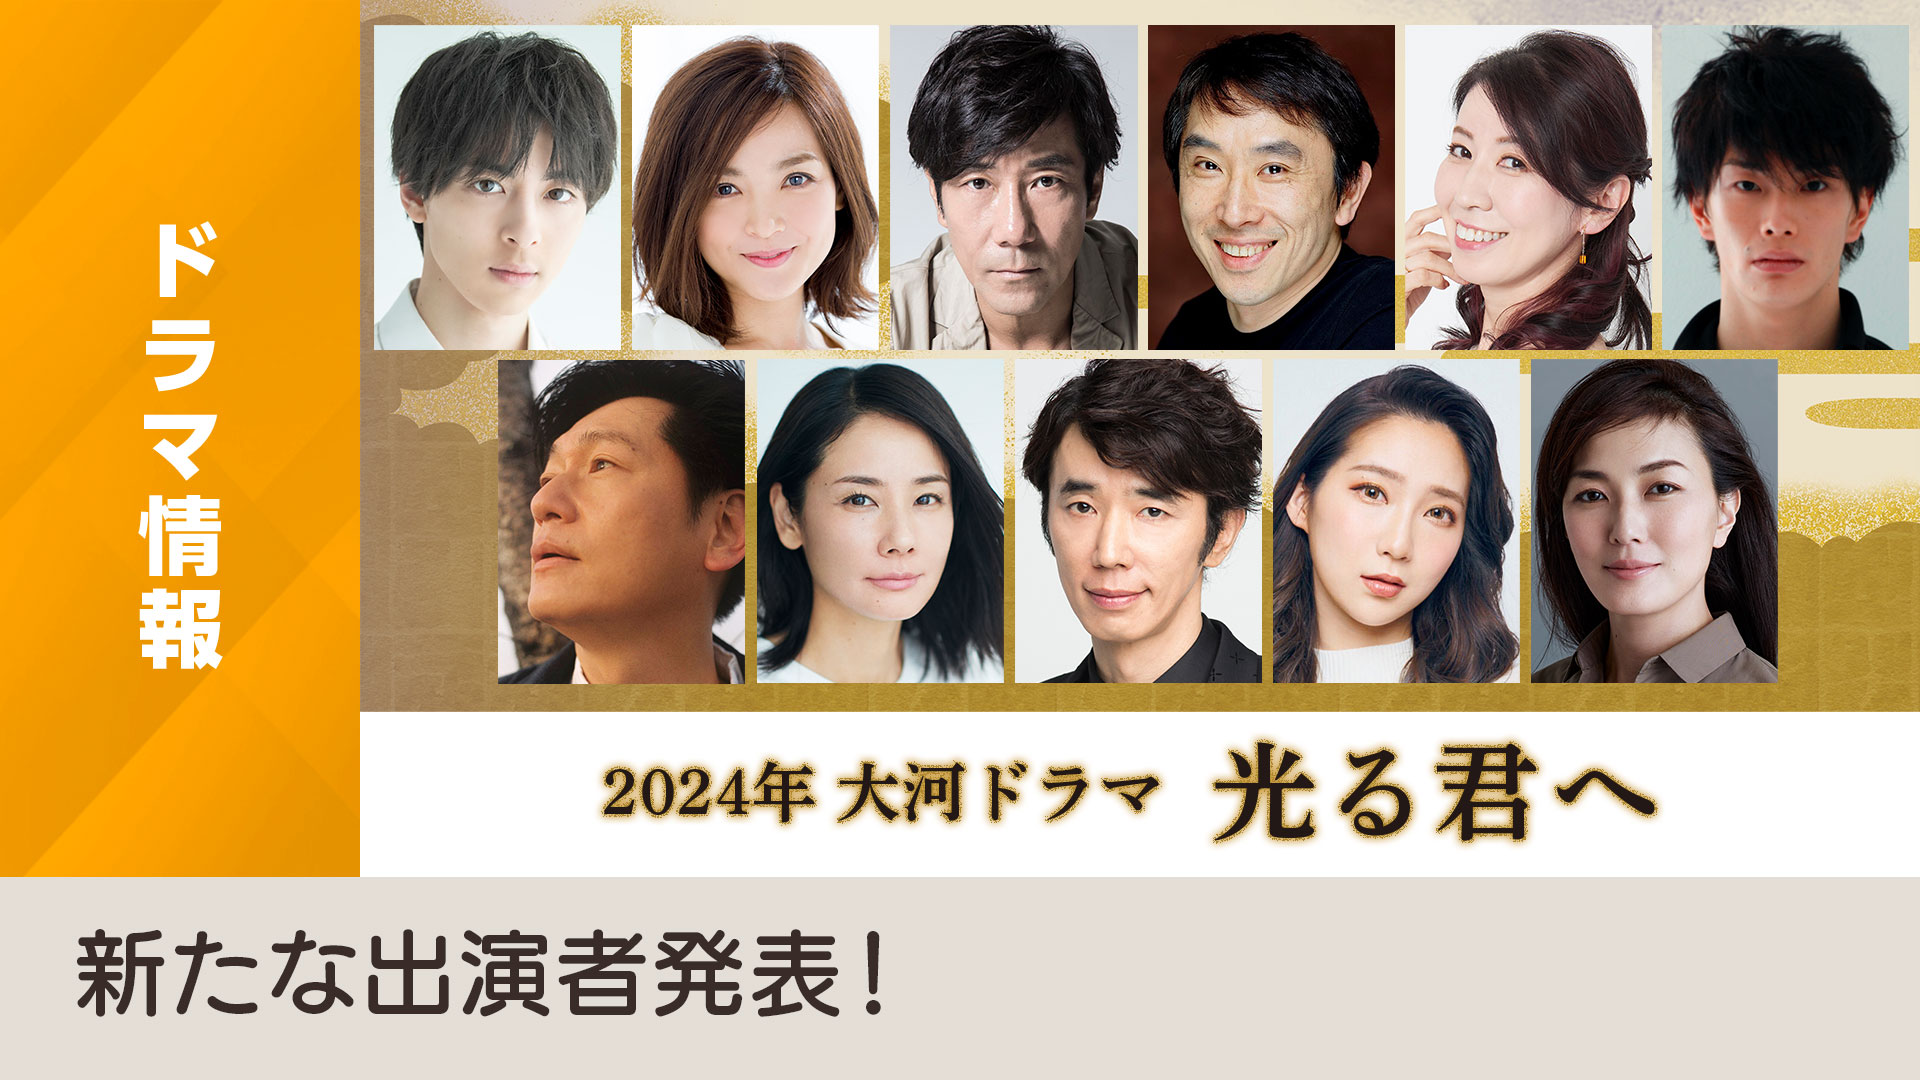 2月21日(火)、2024年 大河ドラマ「光る君へ」新たな出演者発表！ - NHK